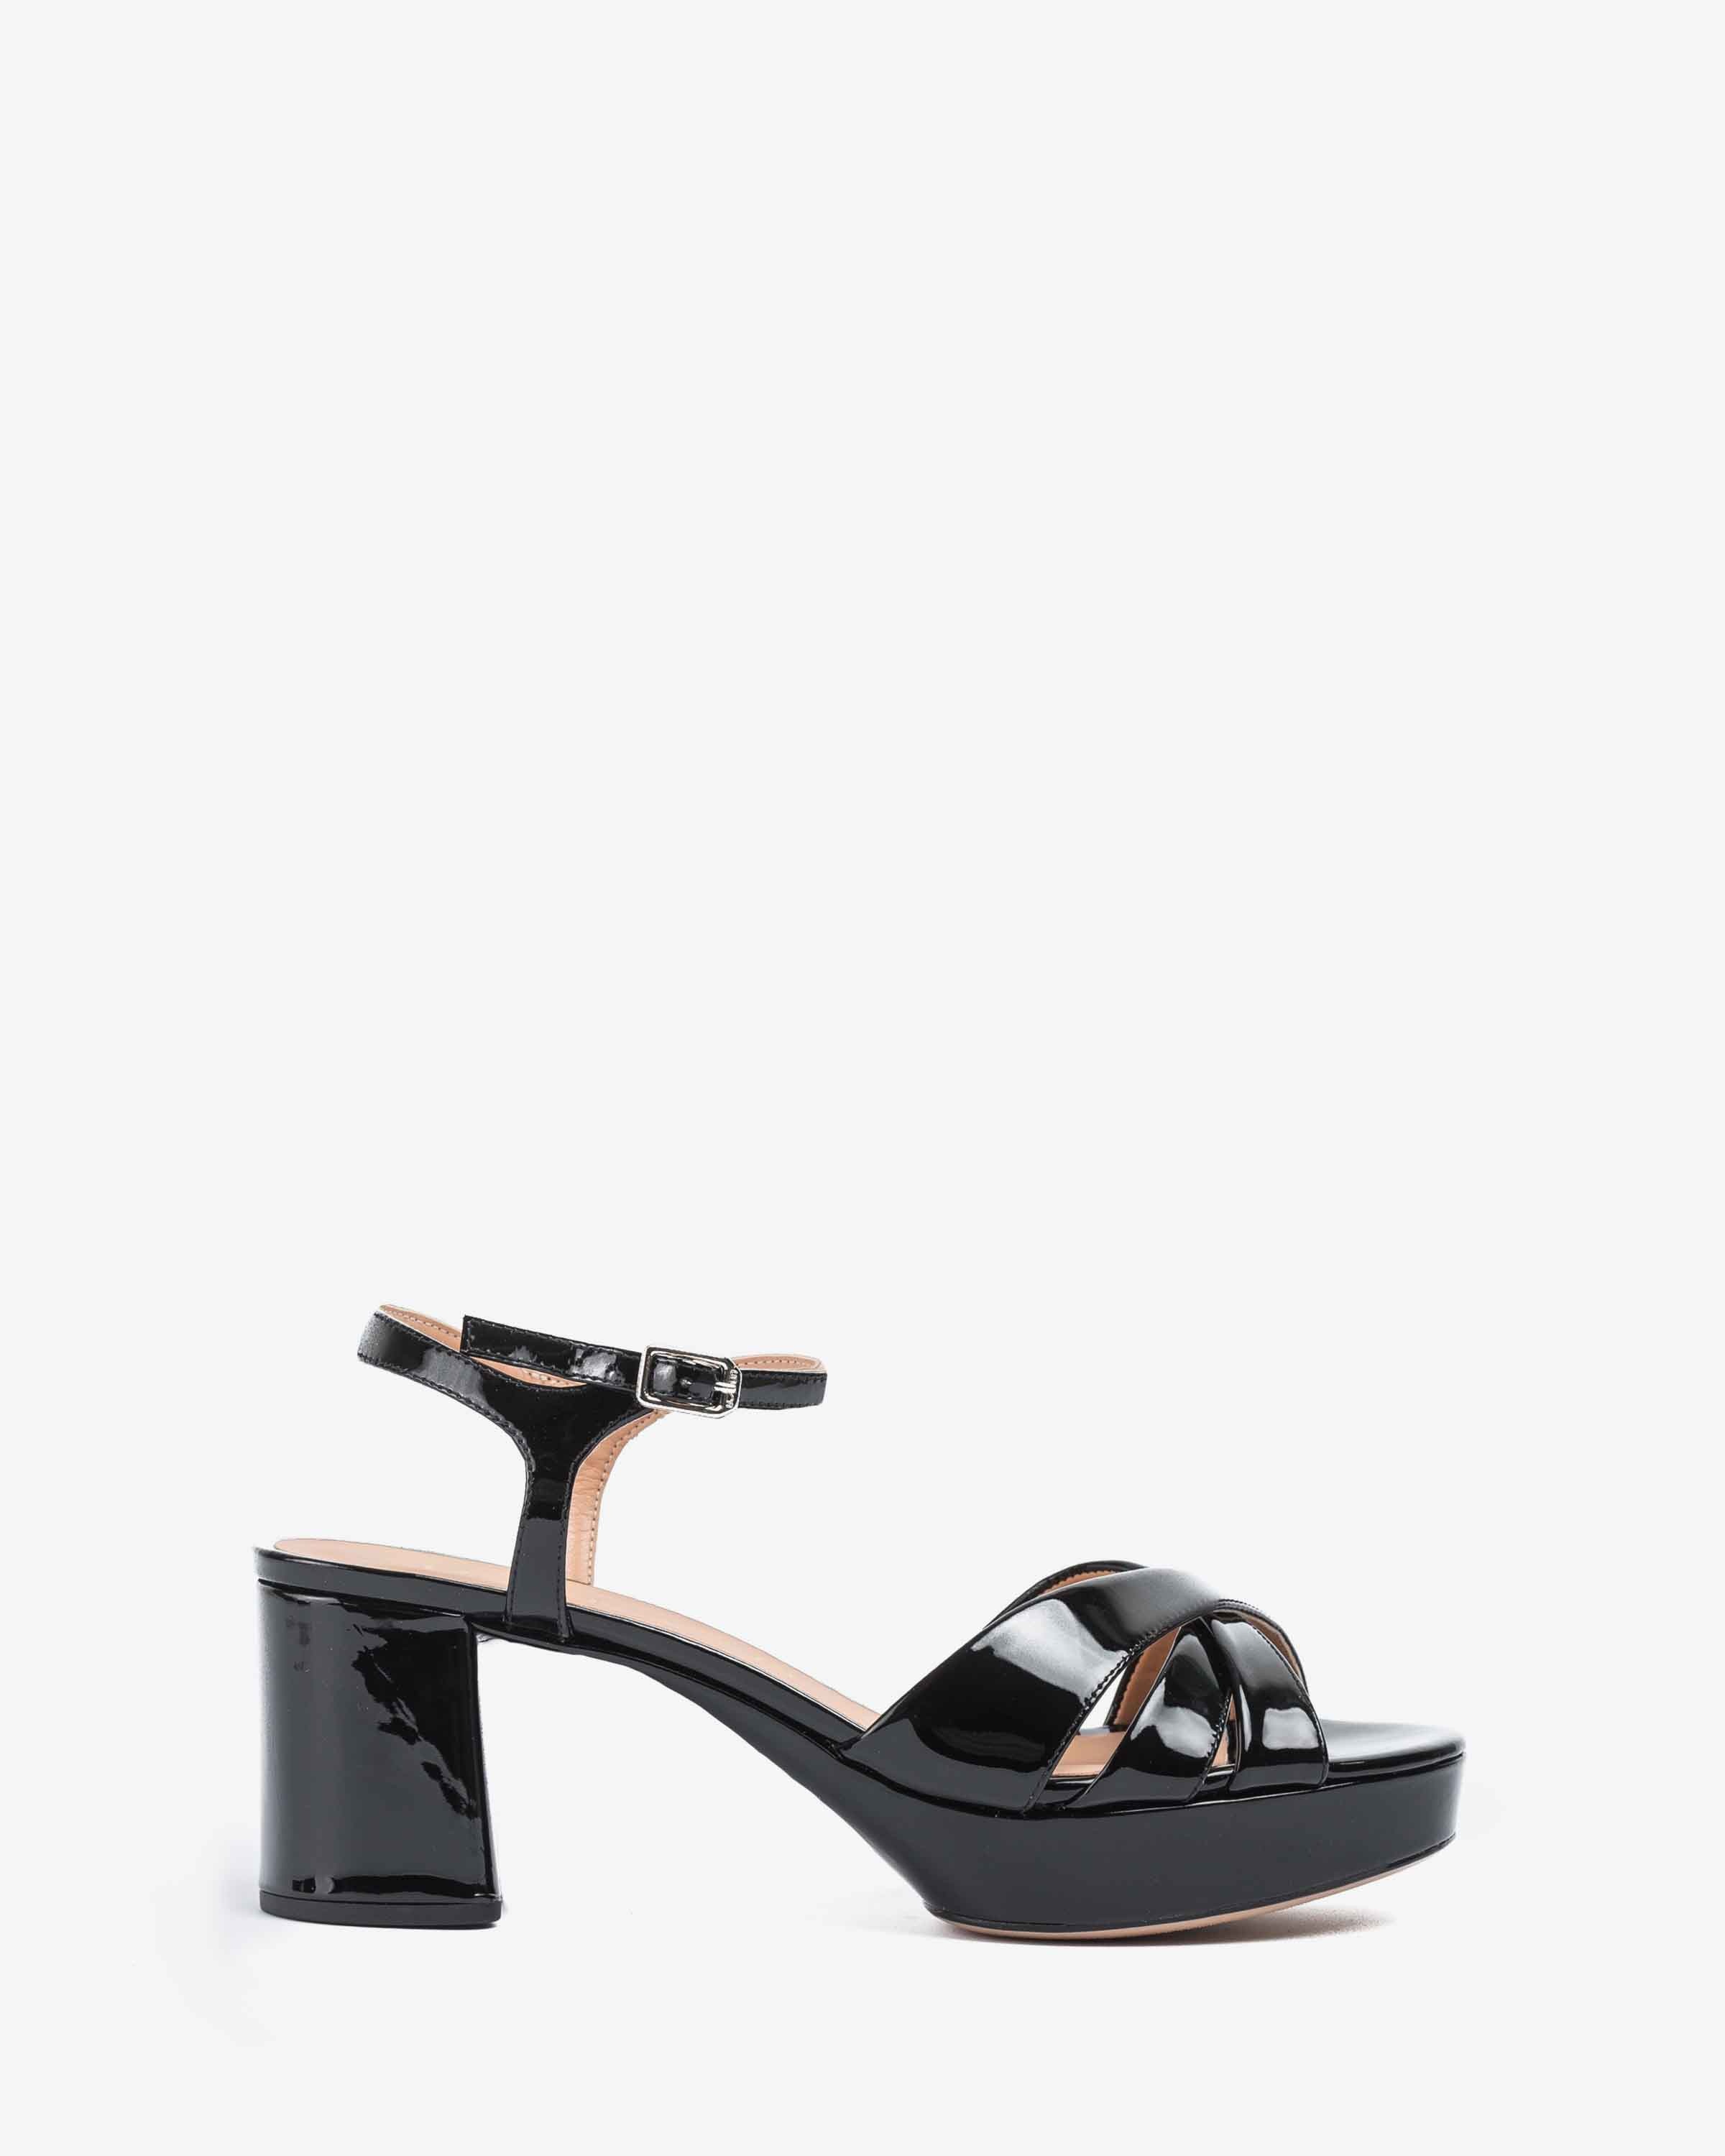 black strap sandals platform